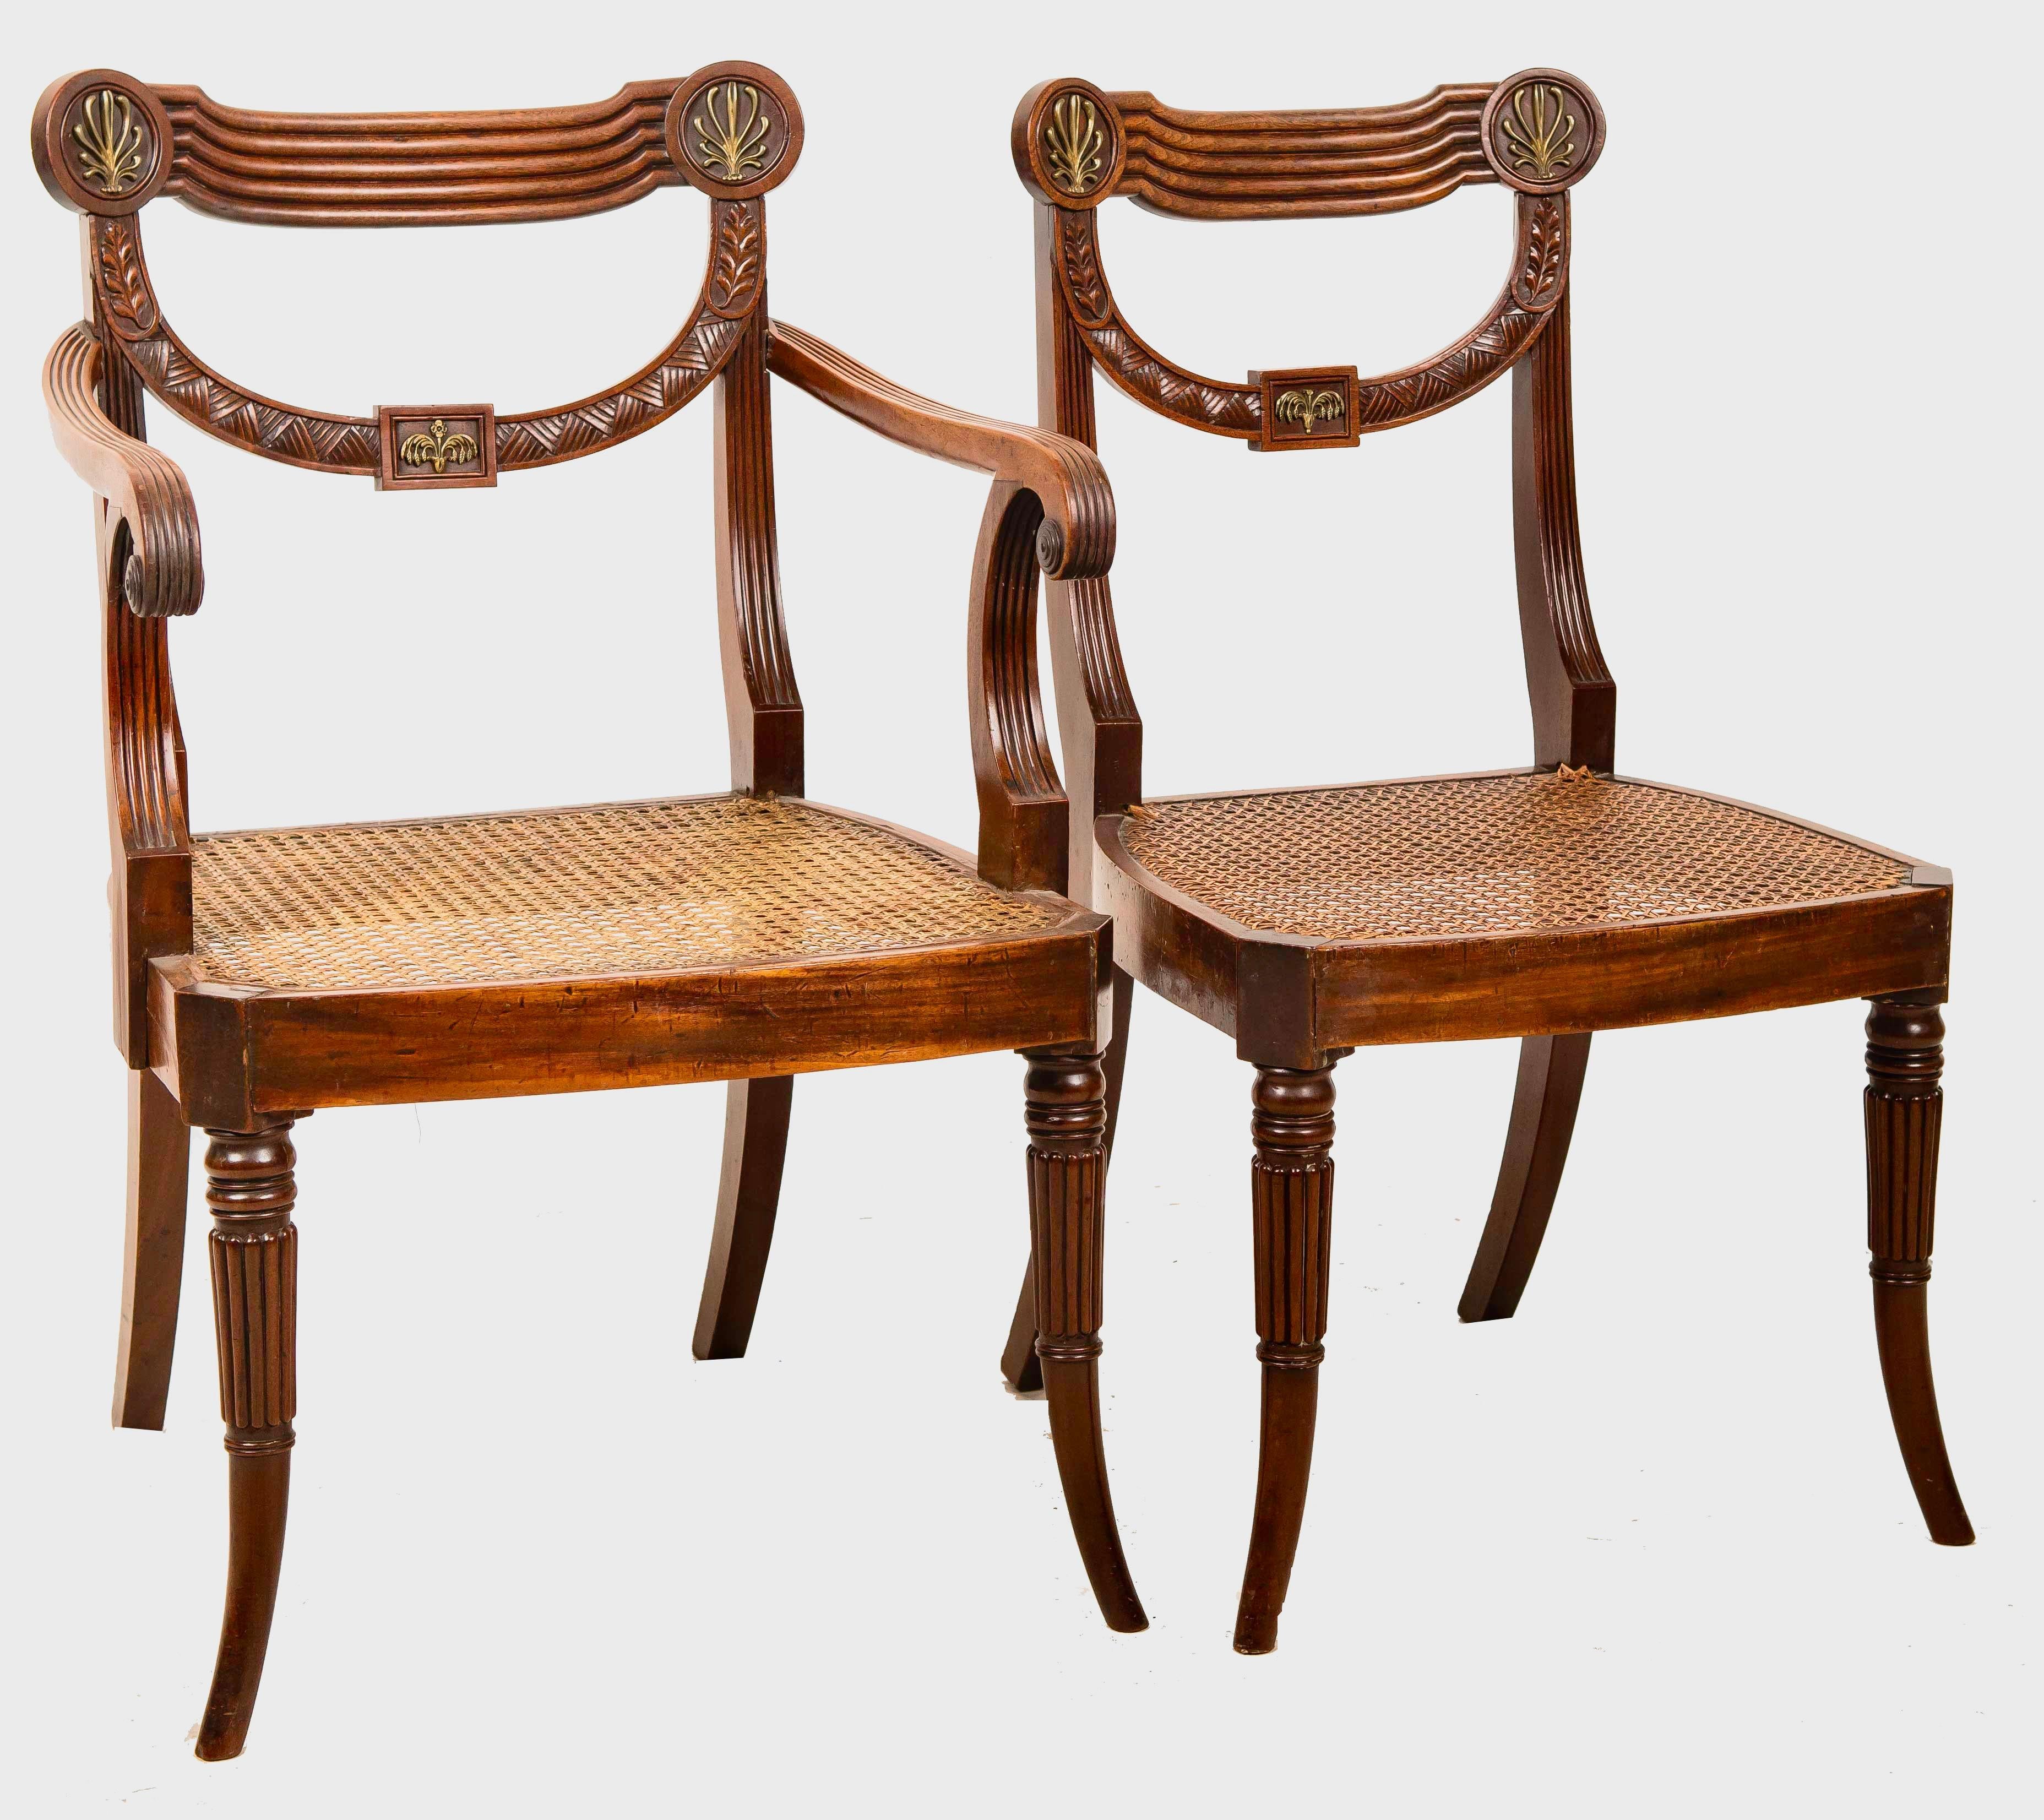 Satz von zehn seltenen und schönen Regency-Stühlen aus geschnitztem Mahagoni. Neoklassizistische drapierte Form mit aufgelegten Ormolu-Beschlägen von Athemion und Weizengarben. Zwei Sessel und acht Seiten. Schöne Wahl des Mahagoniholzes. Hersteller